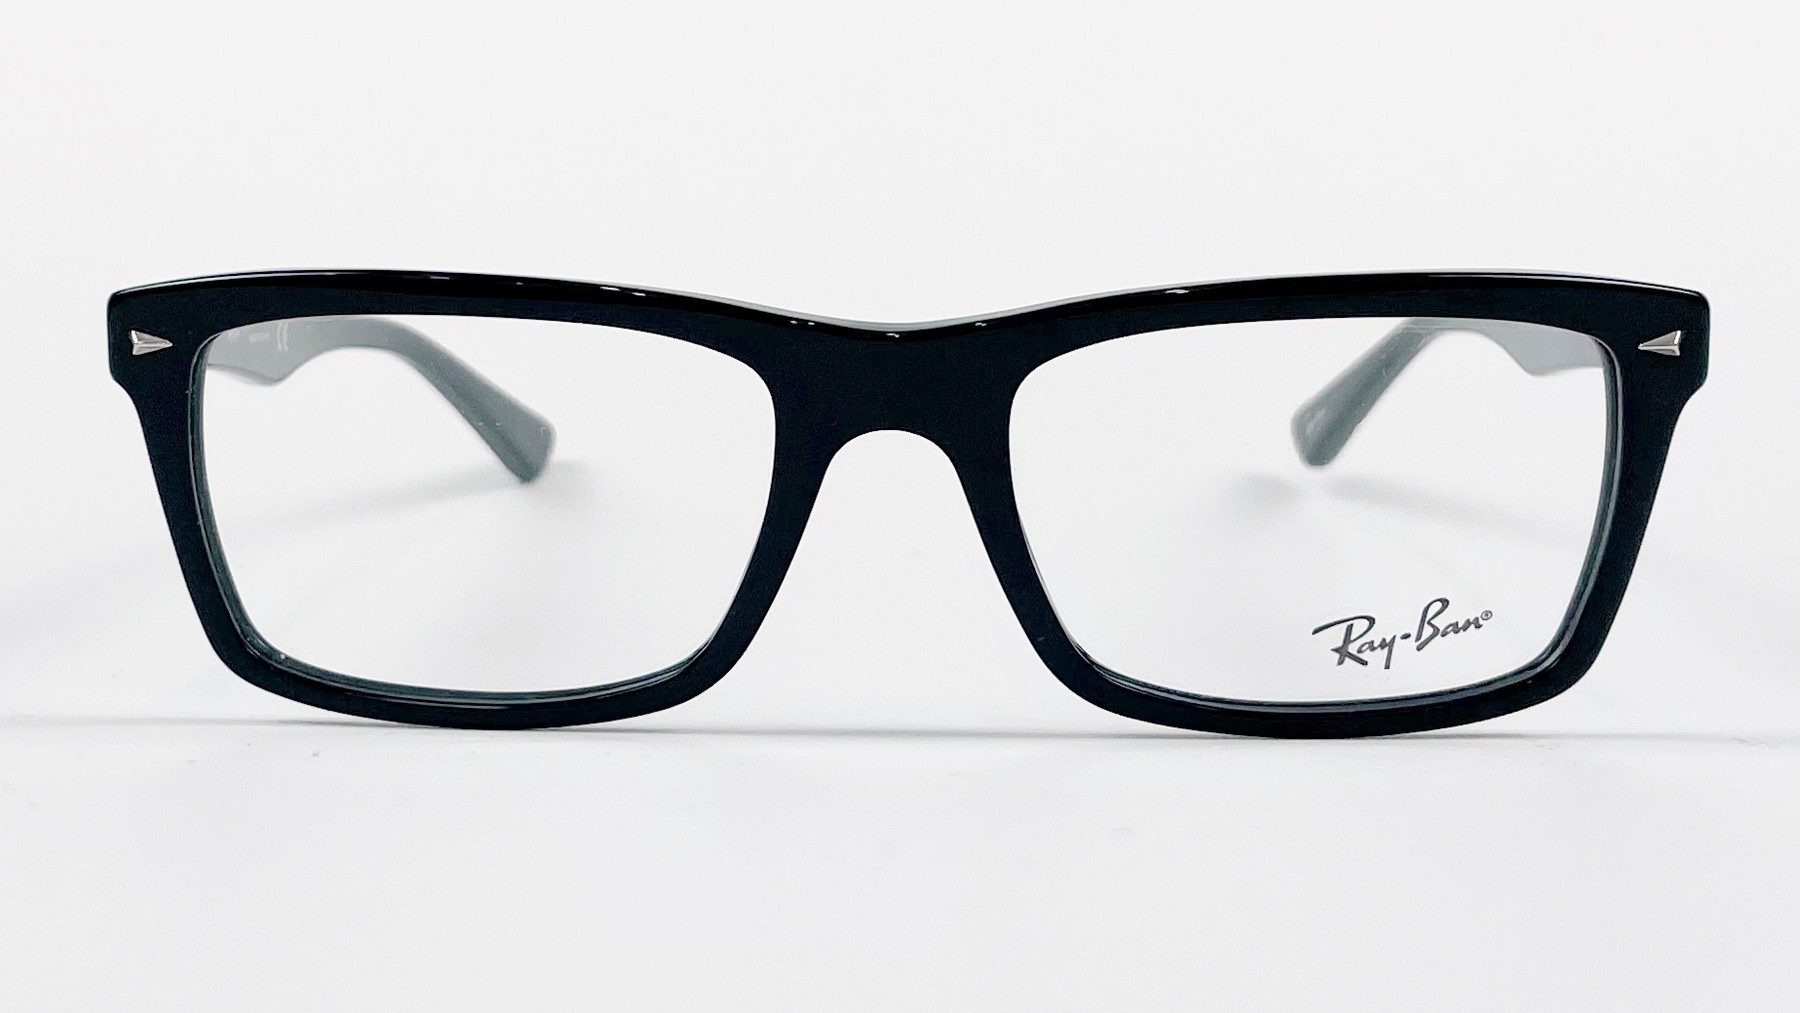 RayBan RB5287 2000, Korean glasses, sunglasses, eyeglasses, glasses